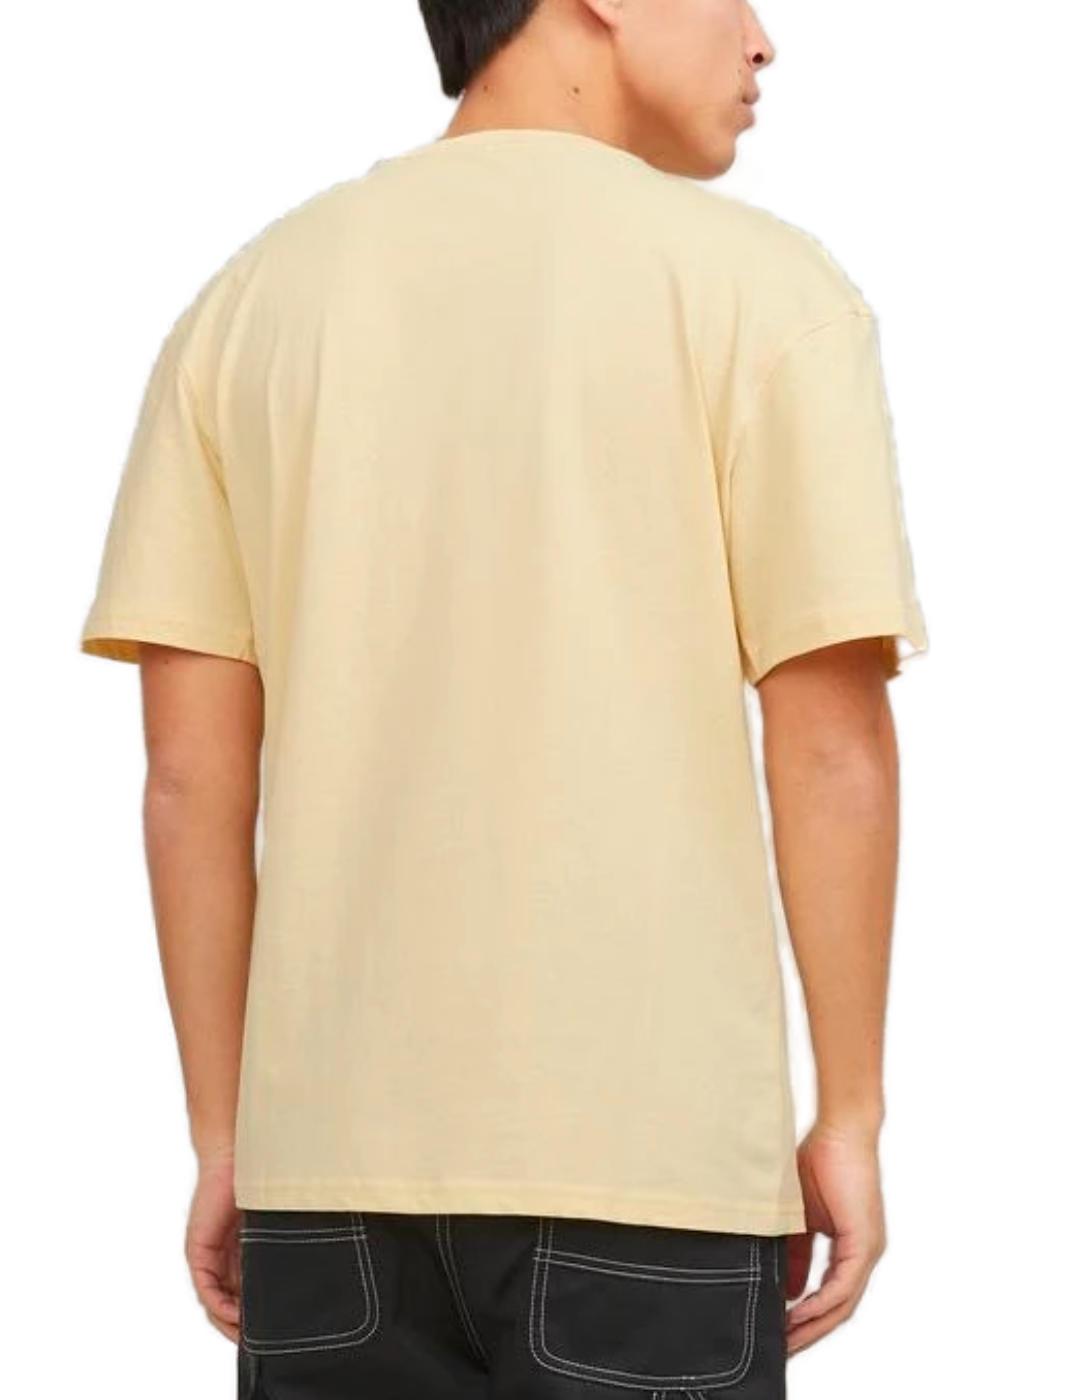 Camiseta Jack&Jones Lucca amarillo manga corta para hombre